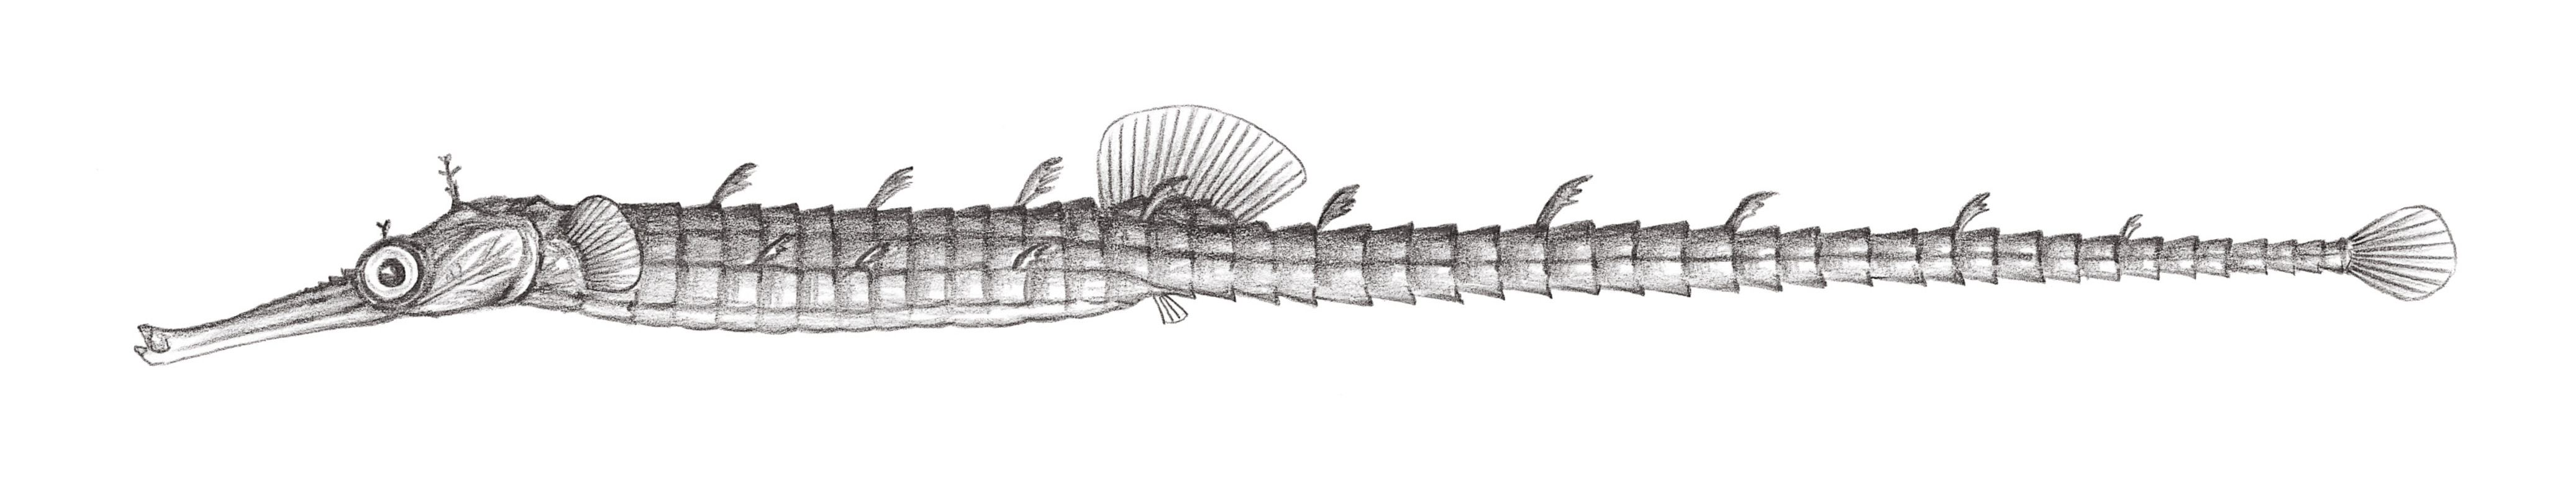 826.	巨吻海蠋魚 Halicampus macrorhynchus Bamber, 1915